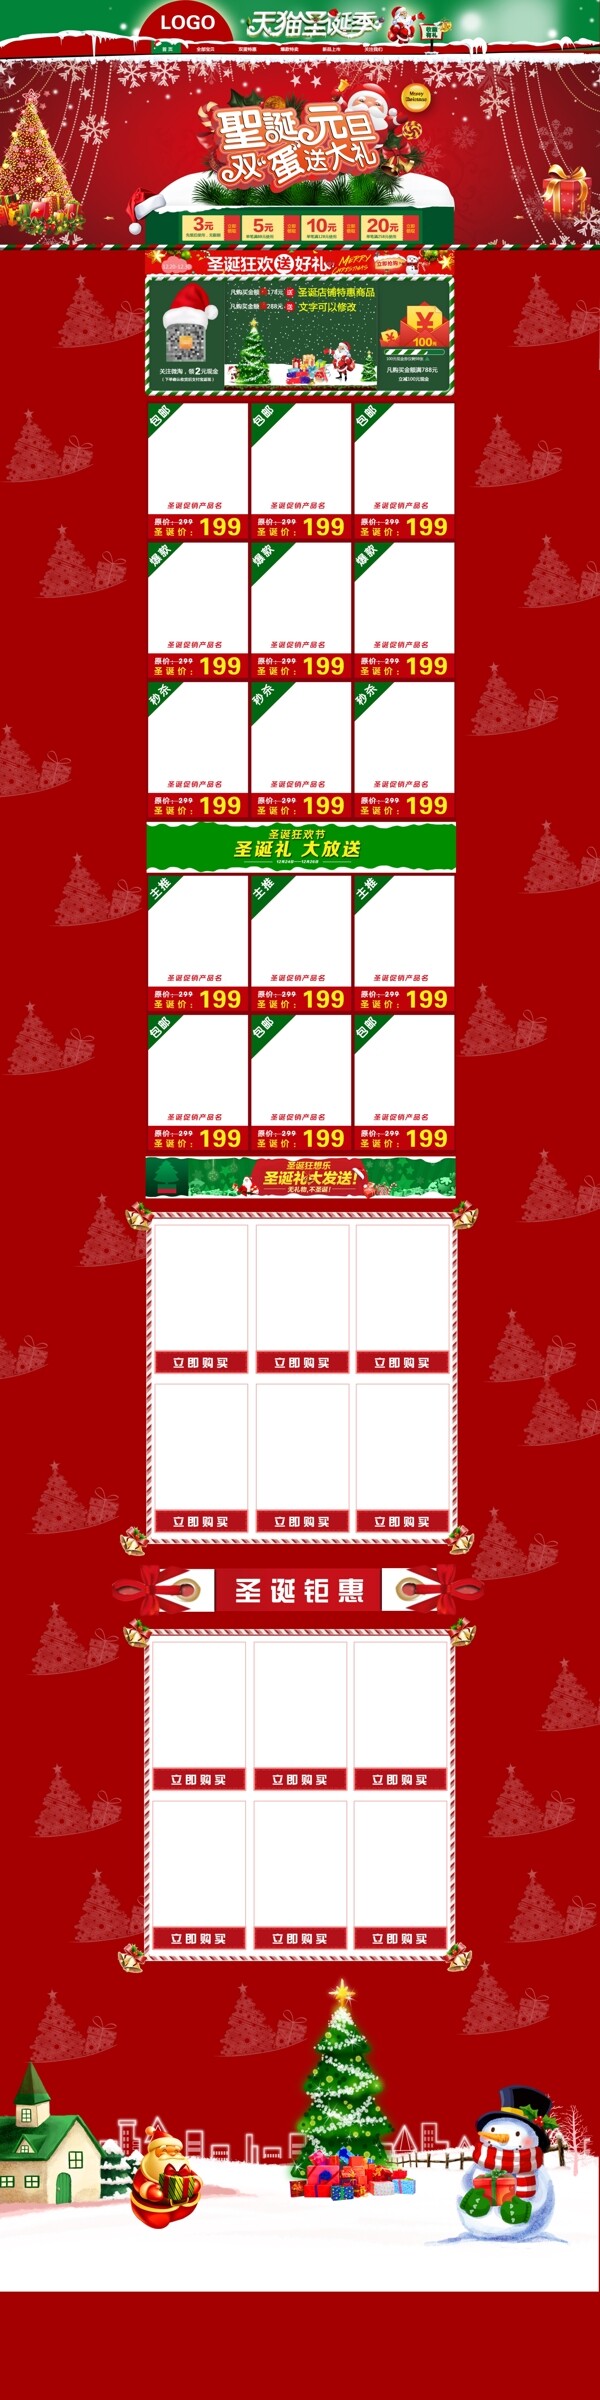 淘宝天猫圣诞节促销活动首页海报模板